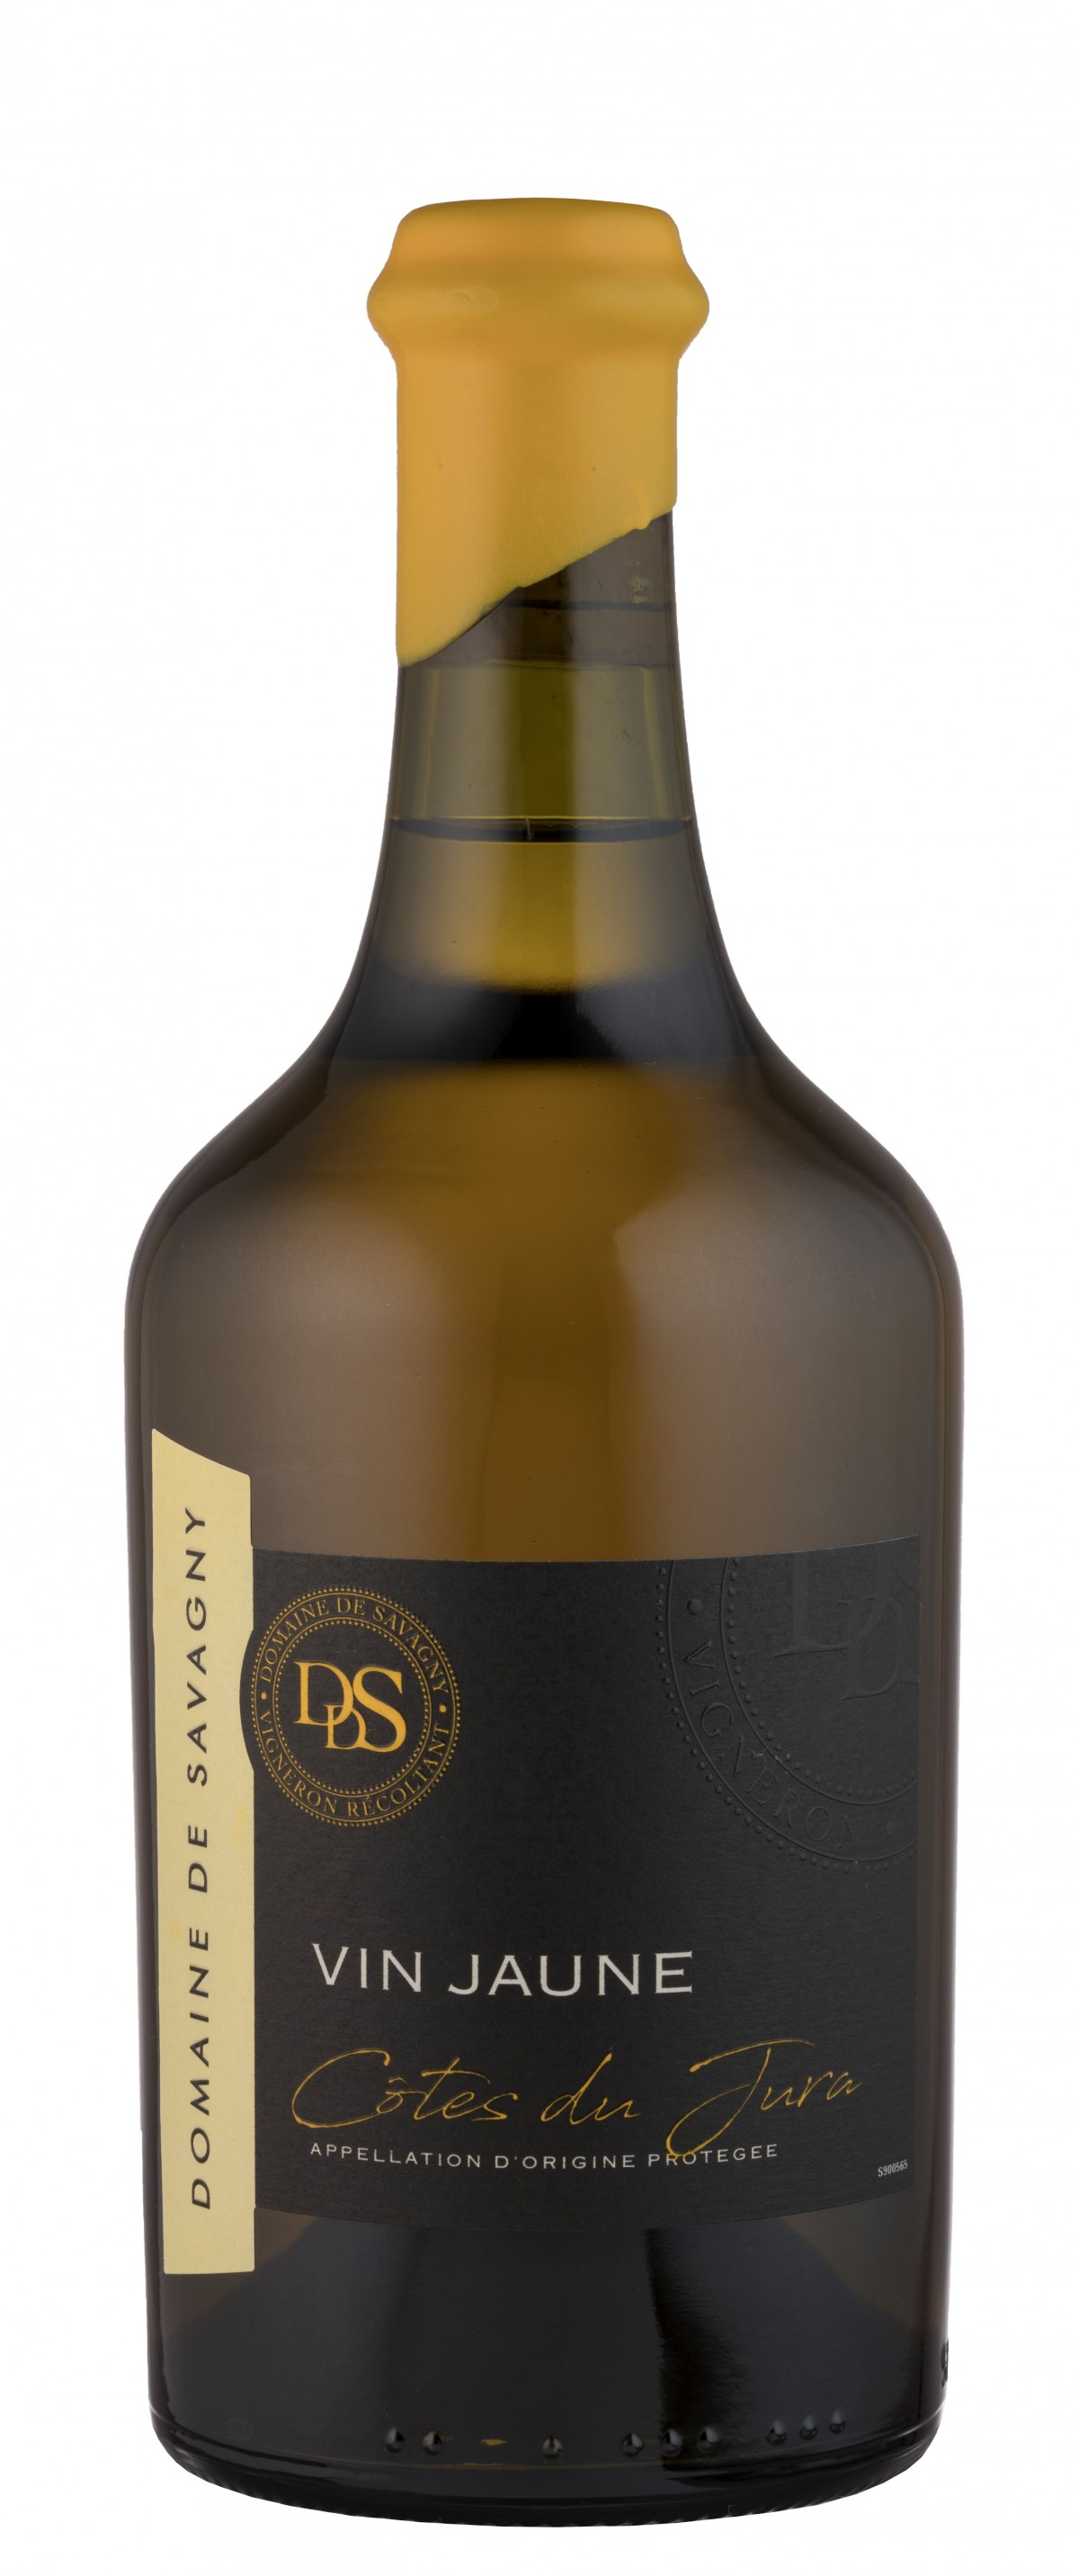 Vin jaune Côtes du Jura Savagnin - Vin Jaune Domaine de Savagny 2016